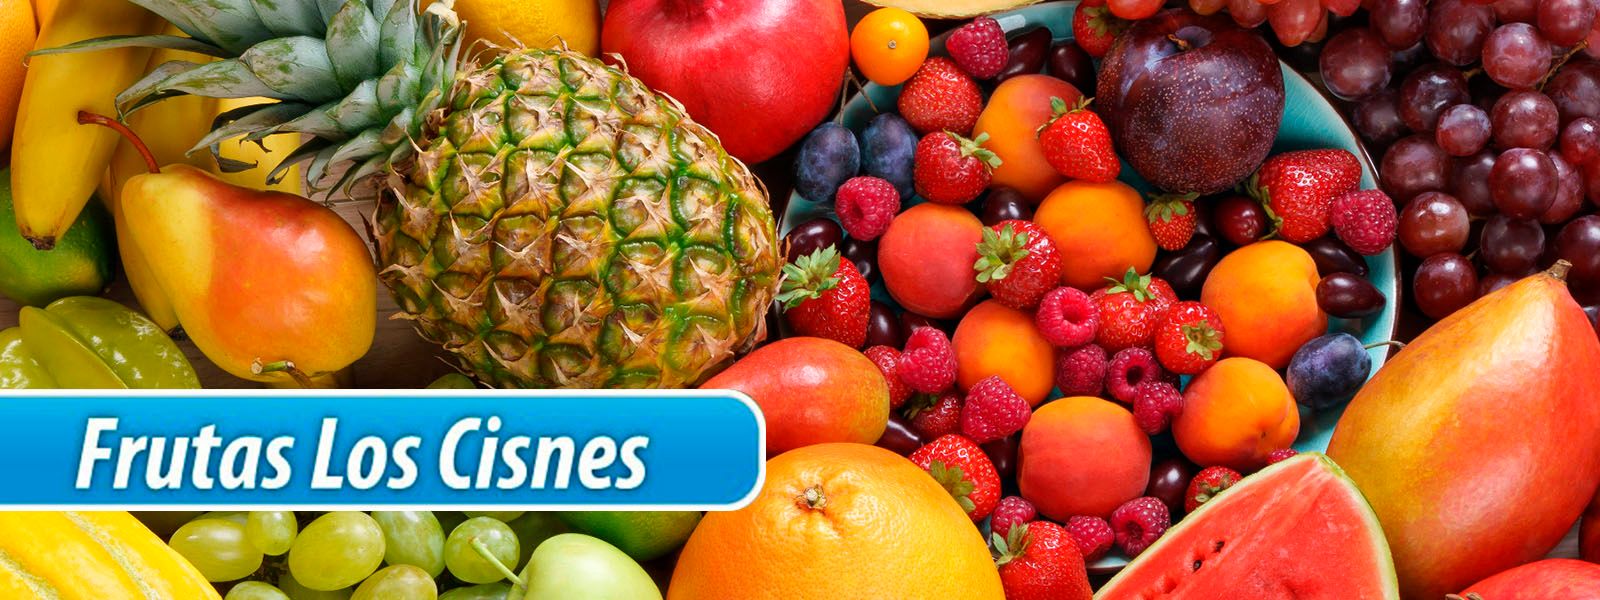 Frutas Los Cisnes frutas y verduras con logo